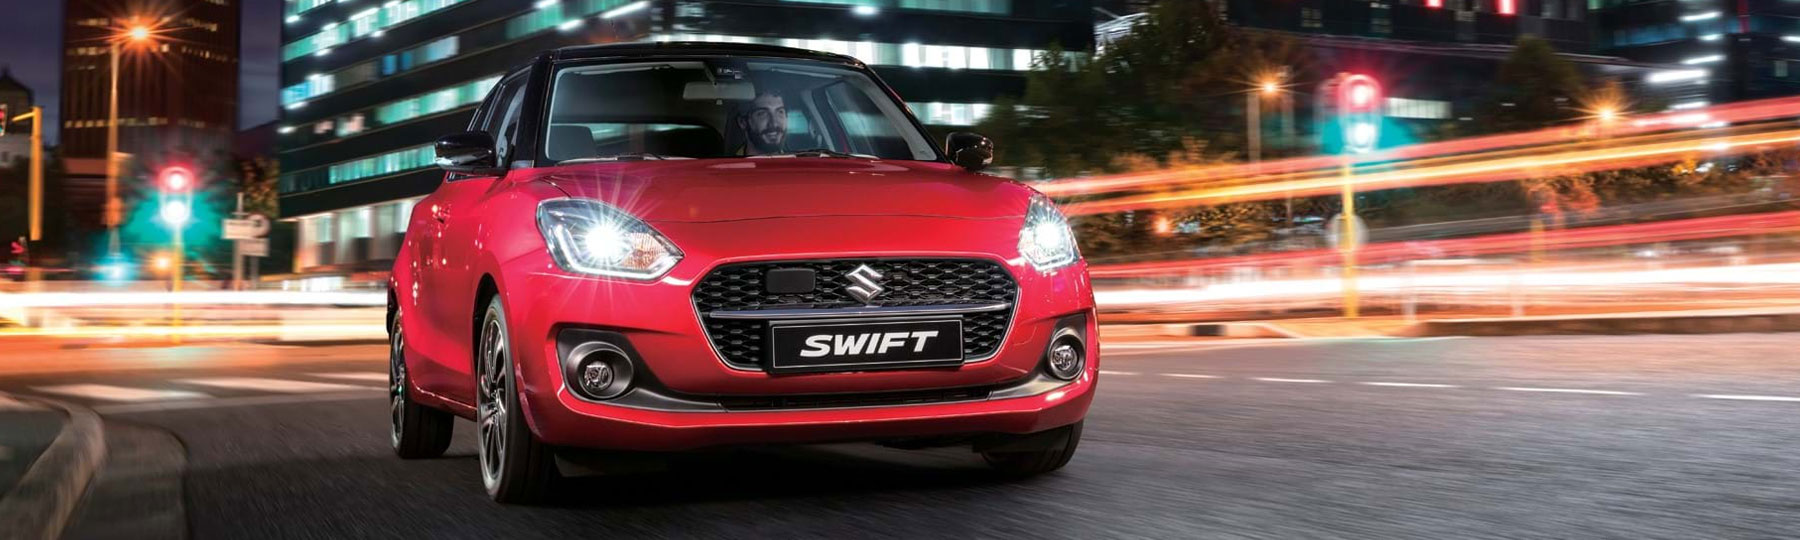 Suzuki Swift Business Offer